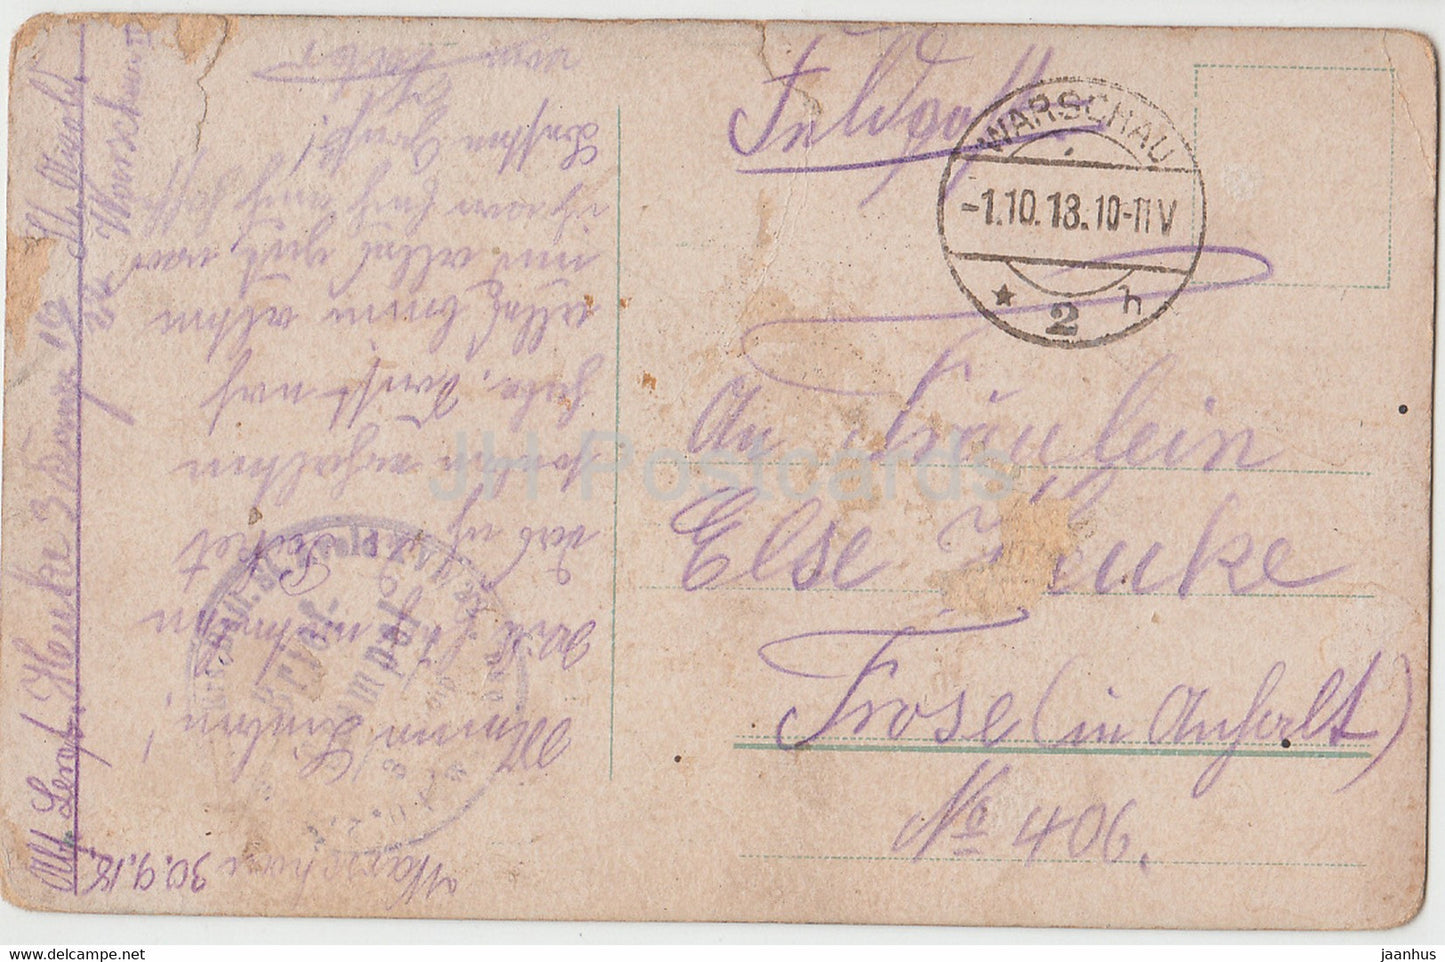 Widoki z Krolestwa Polskiego - Feldpost - alte Postkarte - 1918 - Polen - gebraucht